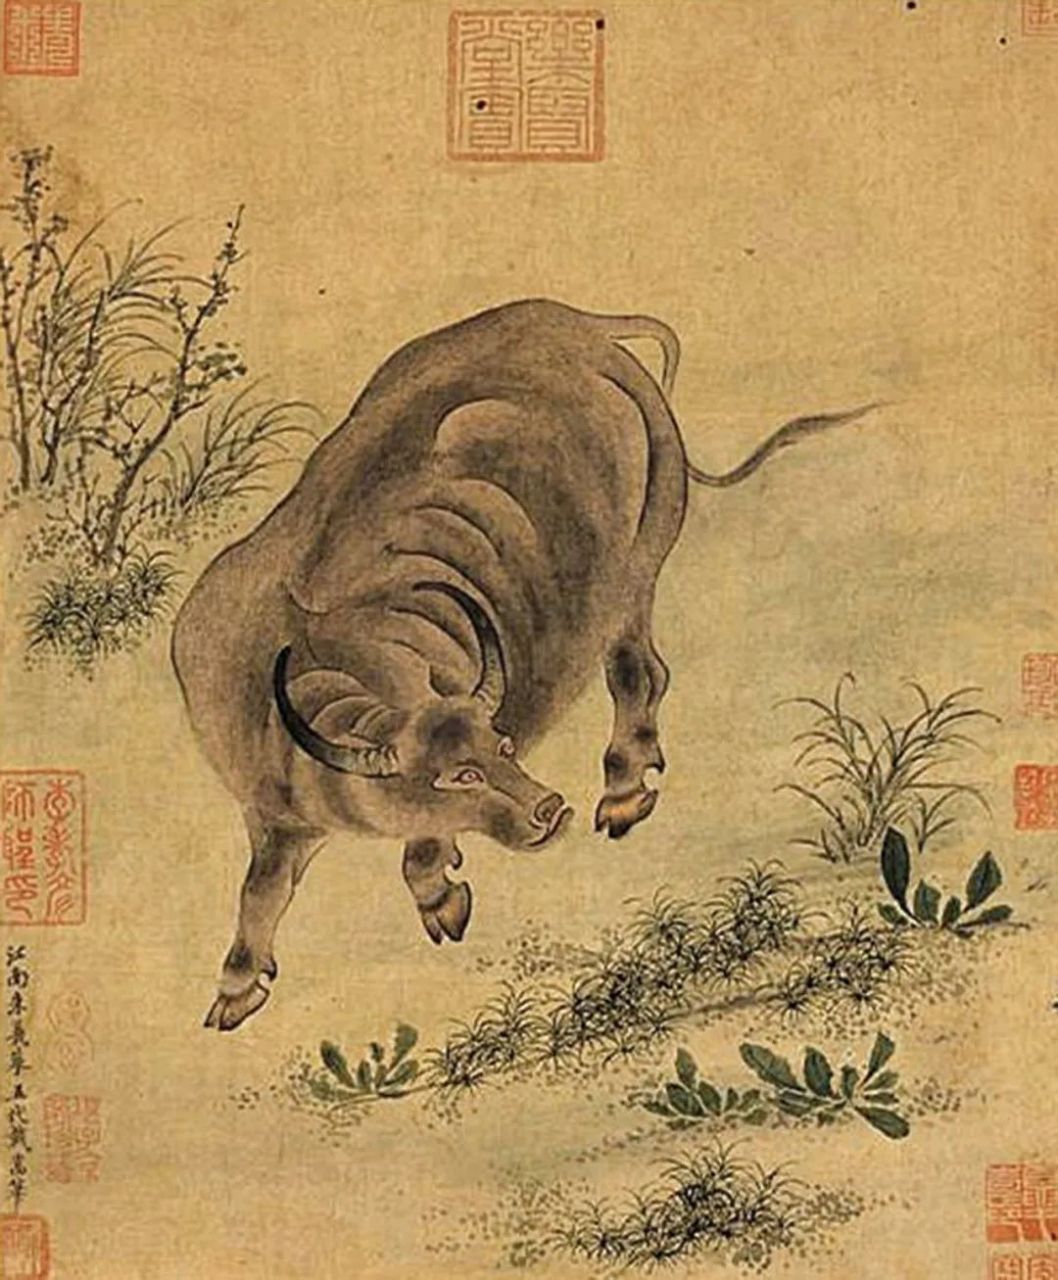 戴嵩在当时以画牛著称,他的画牛和韩干的画马都很著名,合称"韩马戴